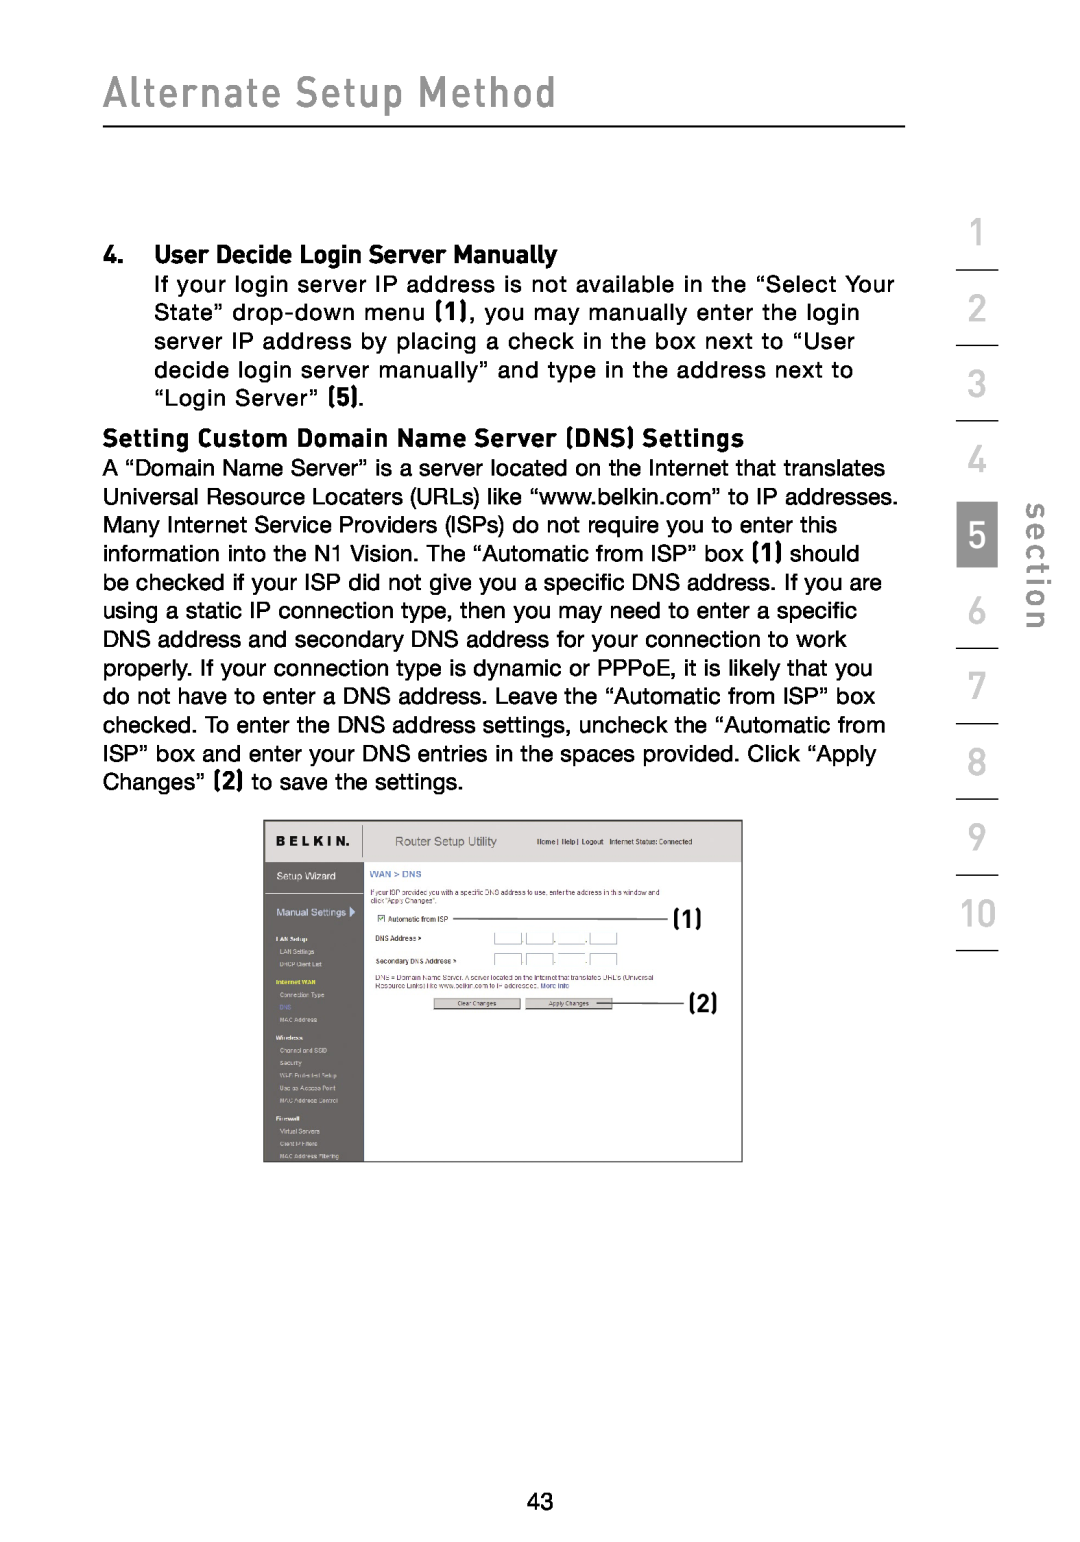 Belkin N1 User Decide Login Server Manually, Setting Custom Domain Name Server DNS Settings, Alternate Setup Method 